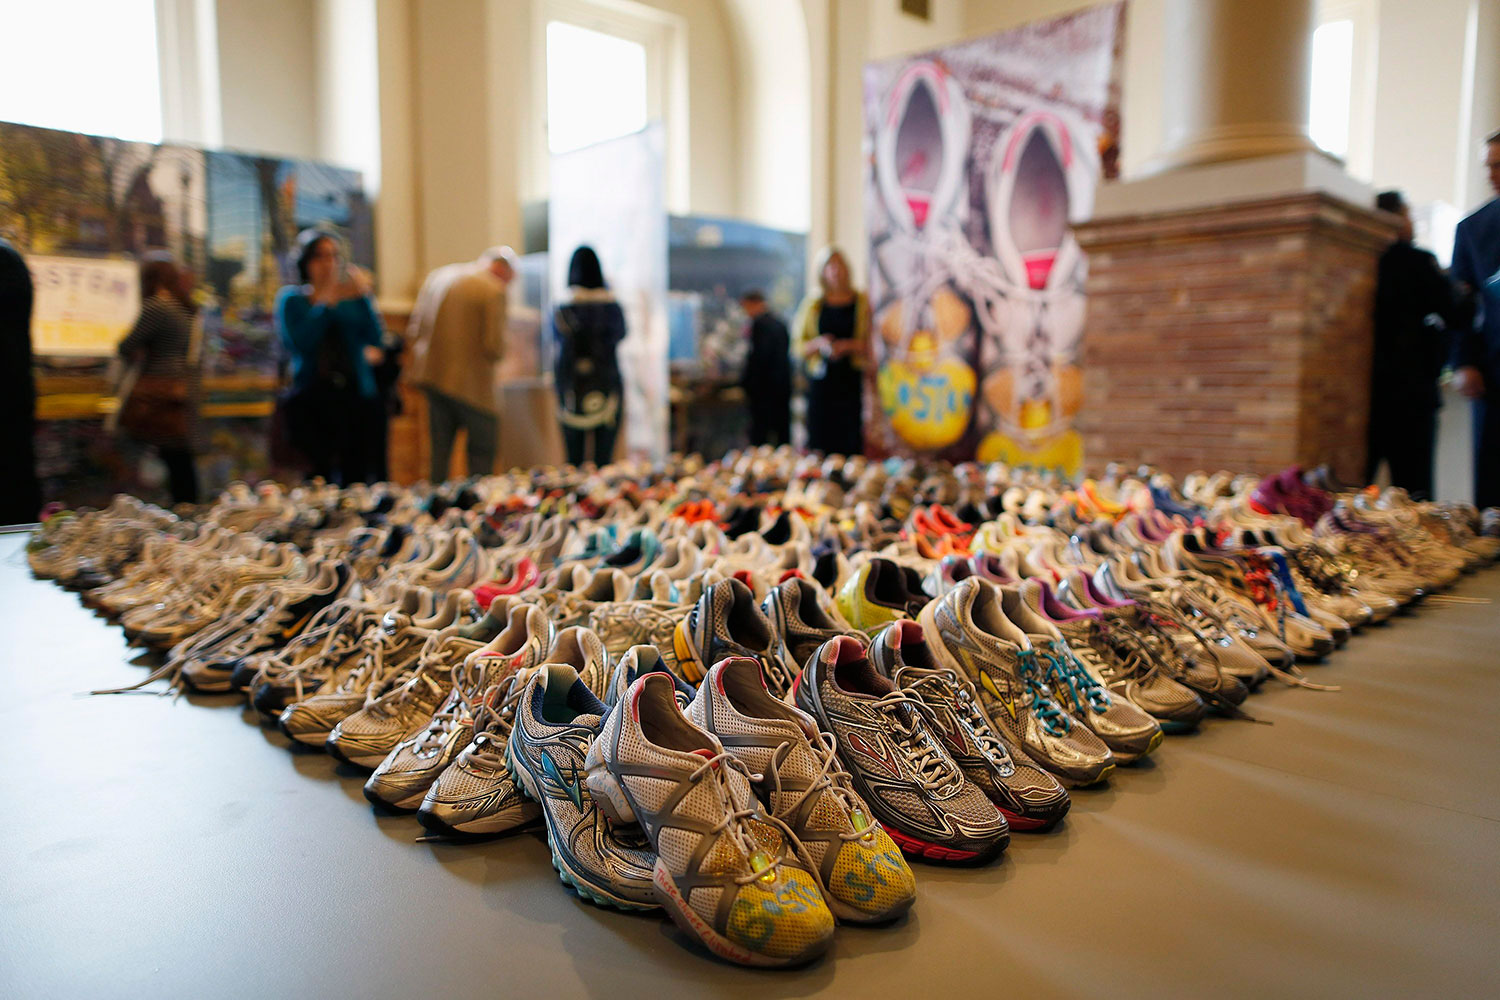 Bostón recuerda a las víctimas de la maratón con una exposición pública